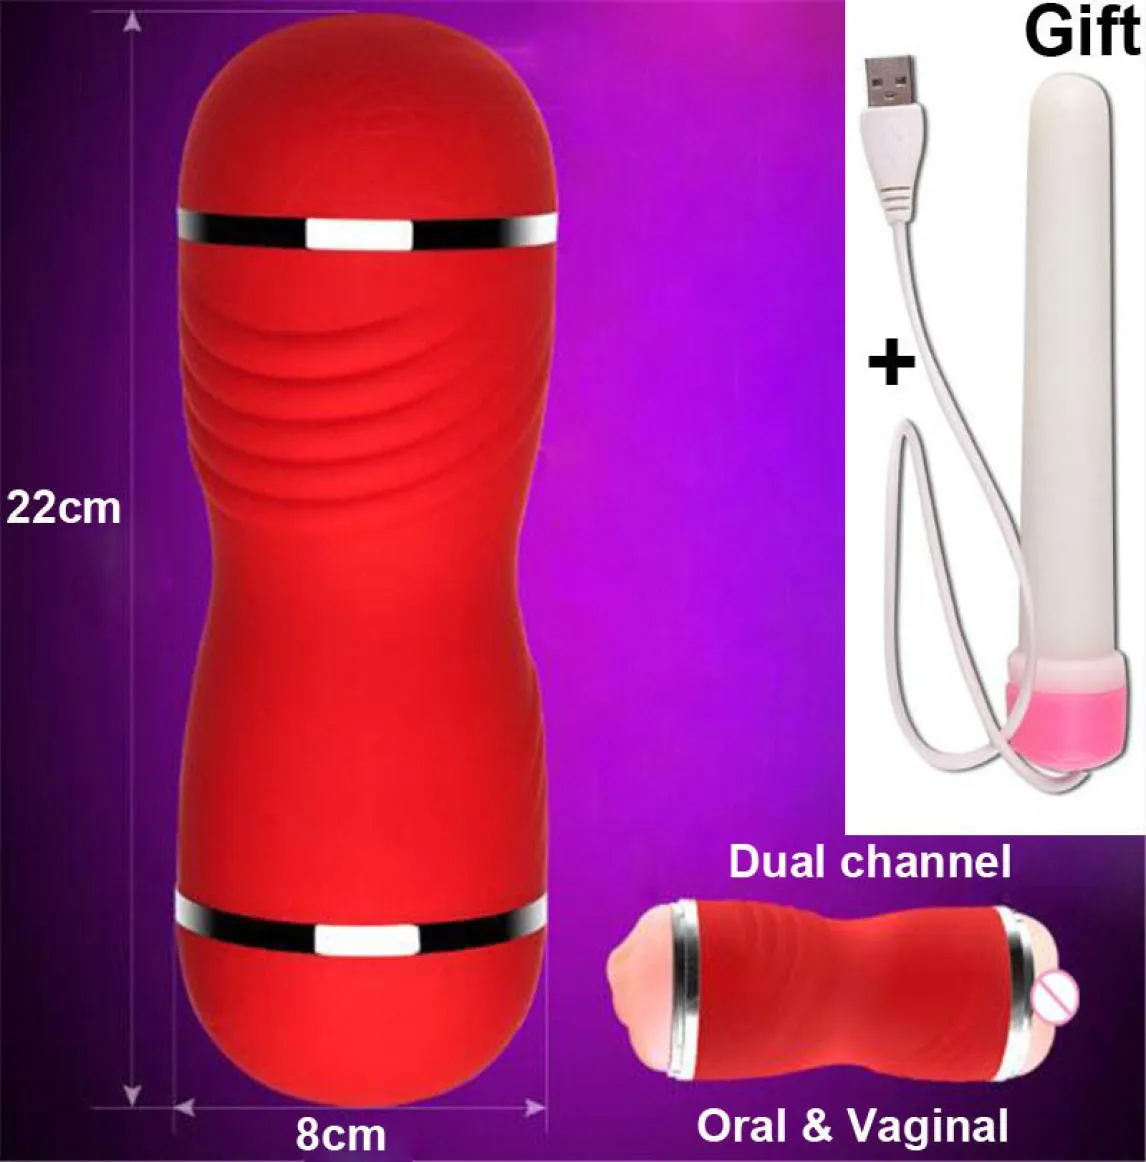 Dual Channel Männlicher Masturbator Für Mann Oral Sex Maschine Tasche Realistische Vagina Echte Pussy Pumpe Erotische Spielzeug Für Männer Blowjob j1905199312806